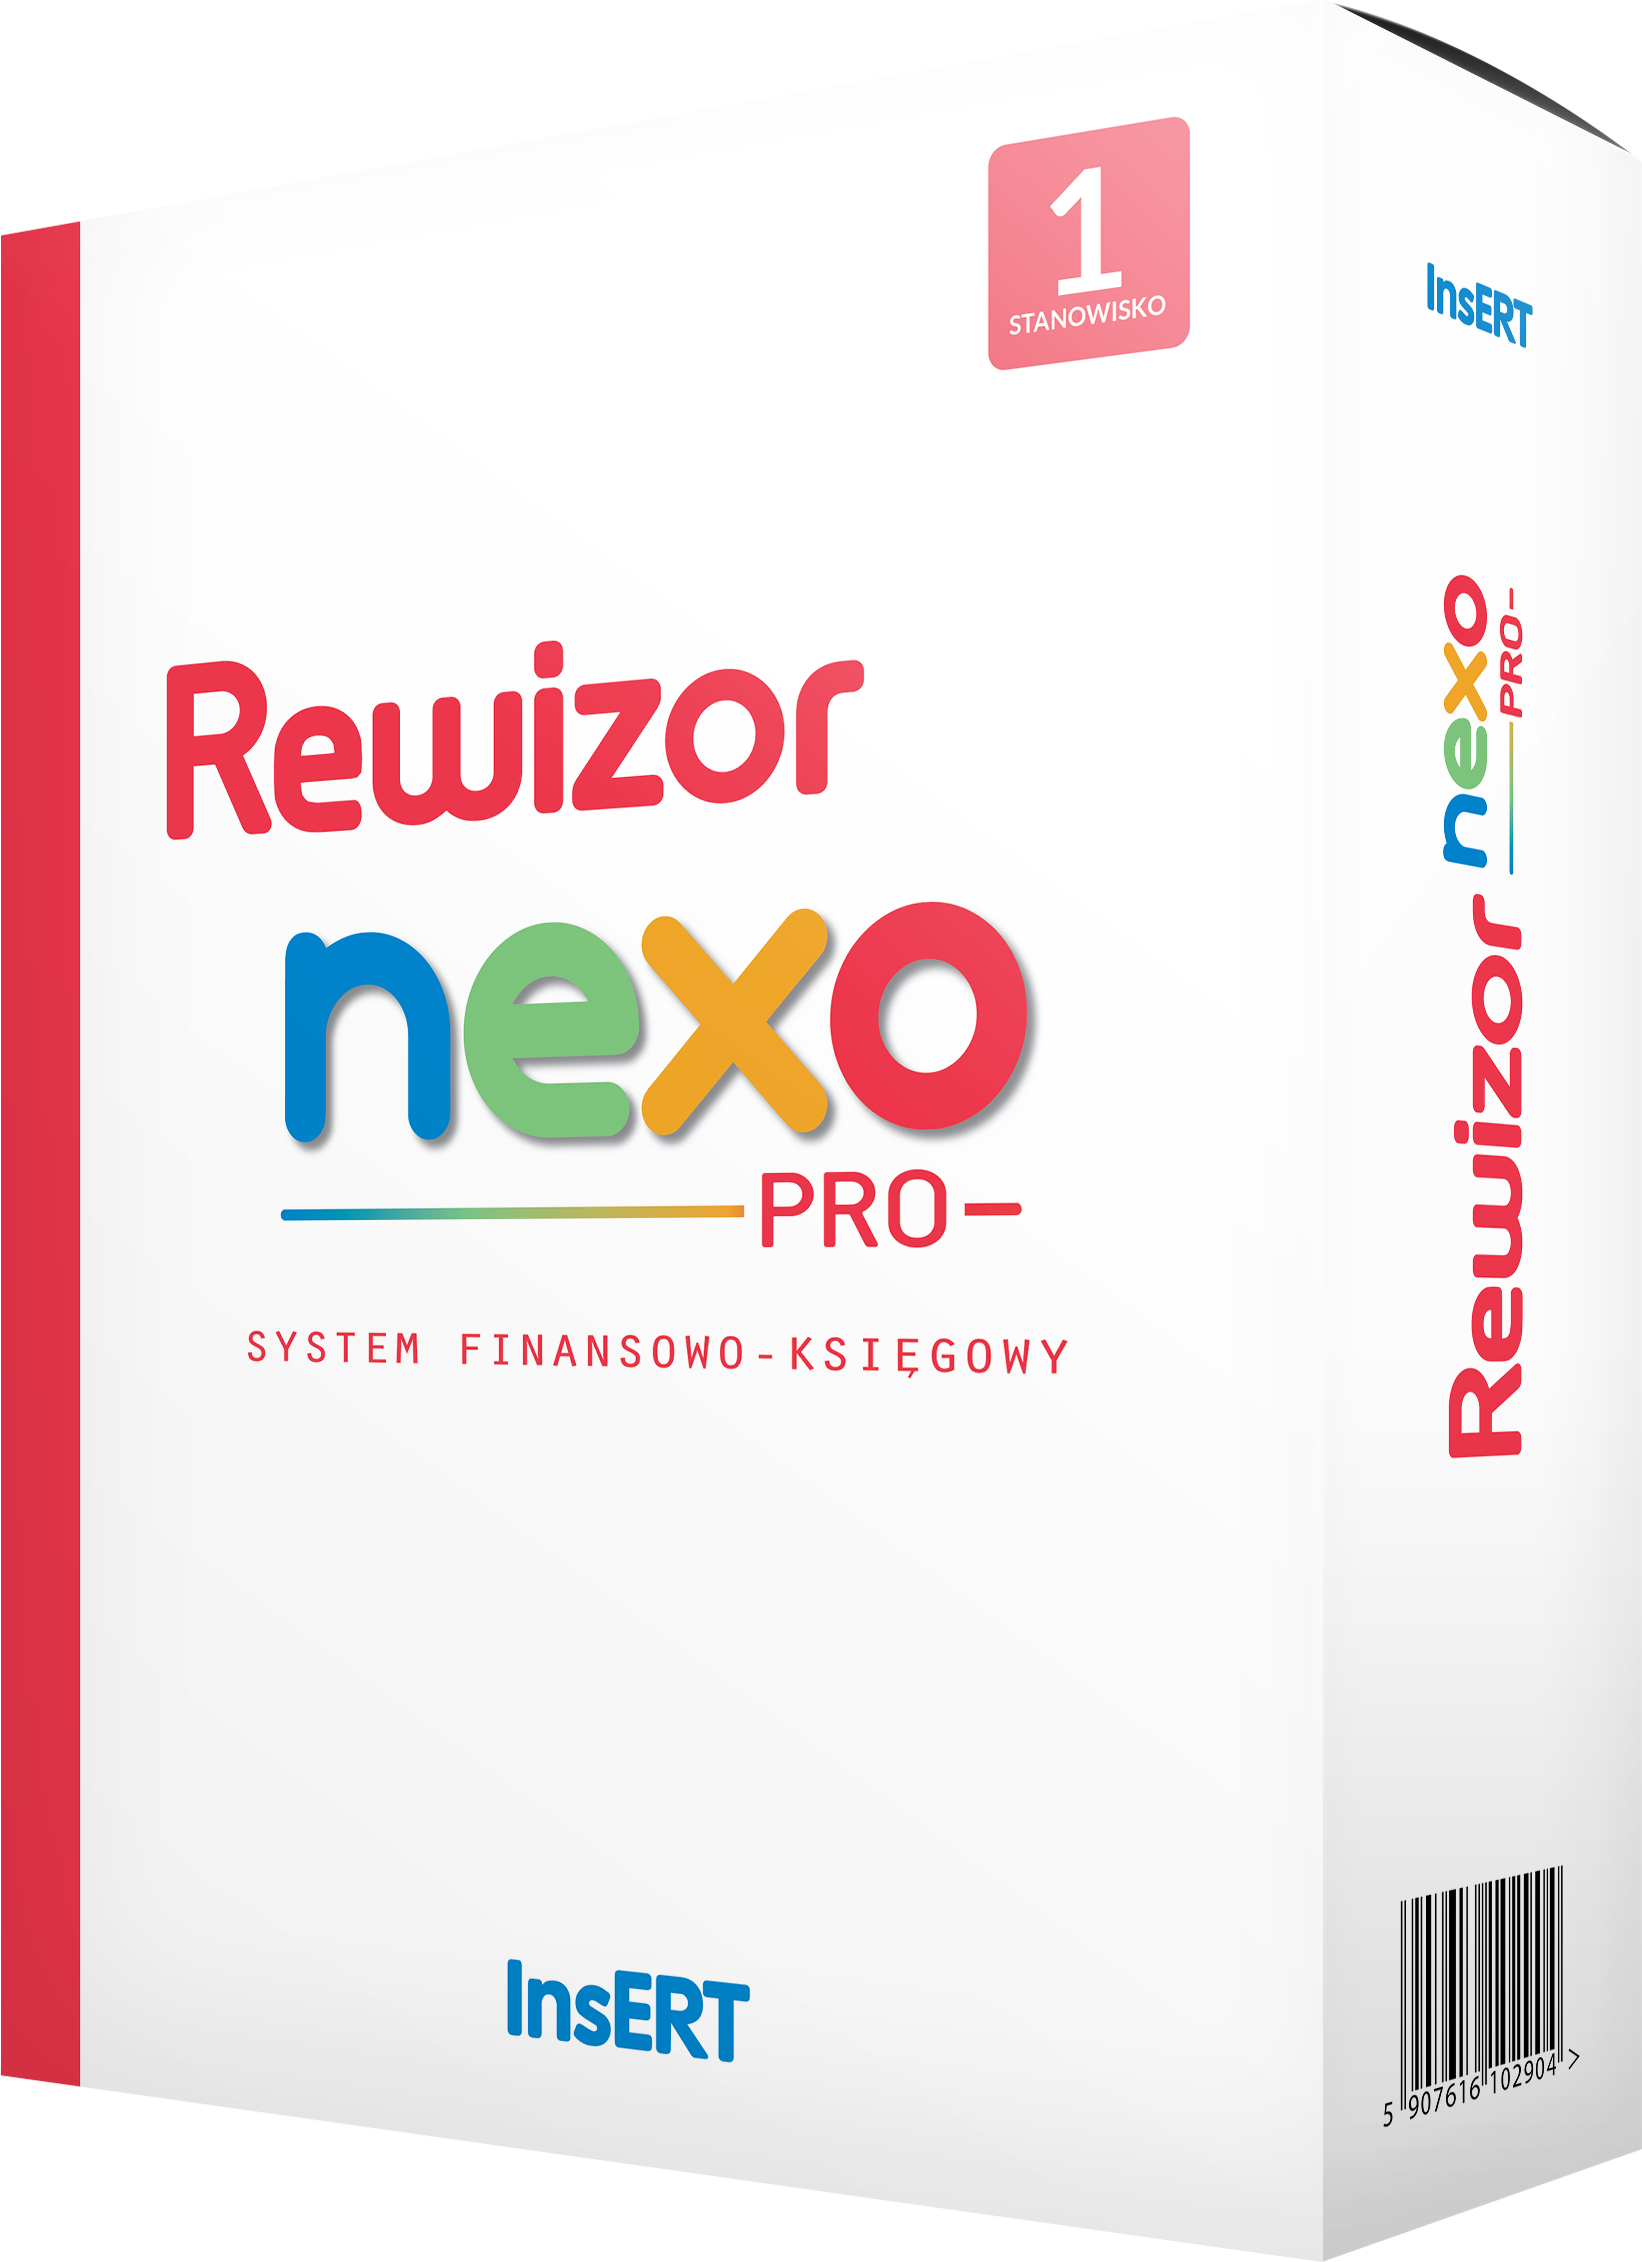 InsERT Rewizor nexo PRO - Program do pełnej księgowości